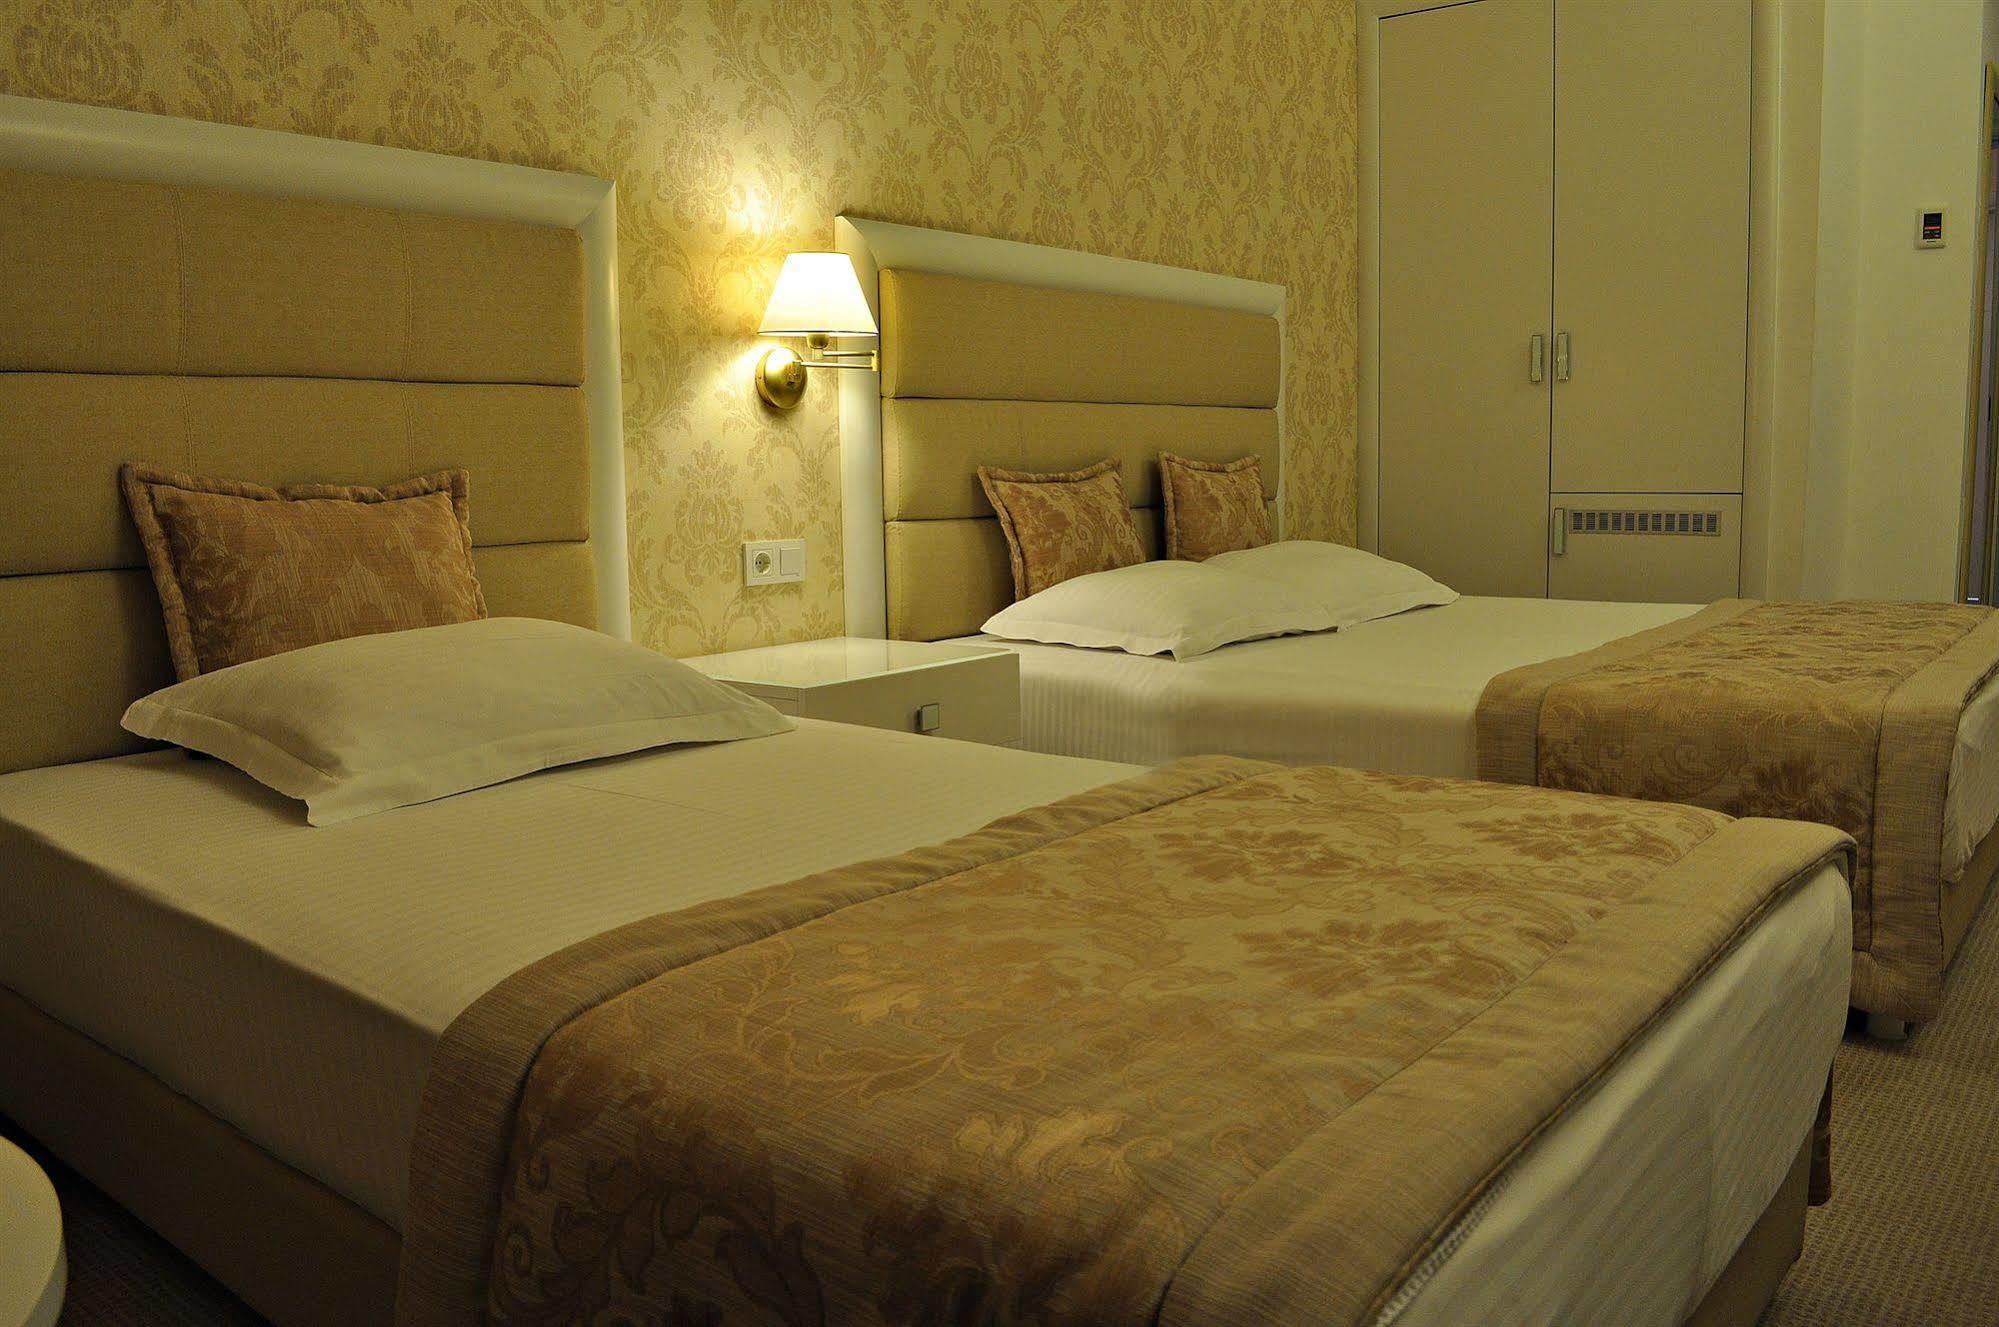 Hotel Edirne Palace Zewnętrze zdjęcie